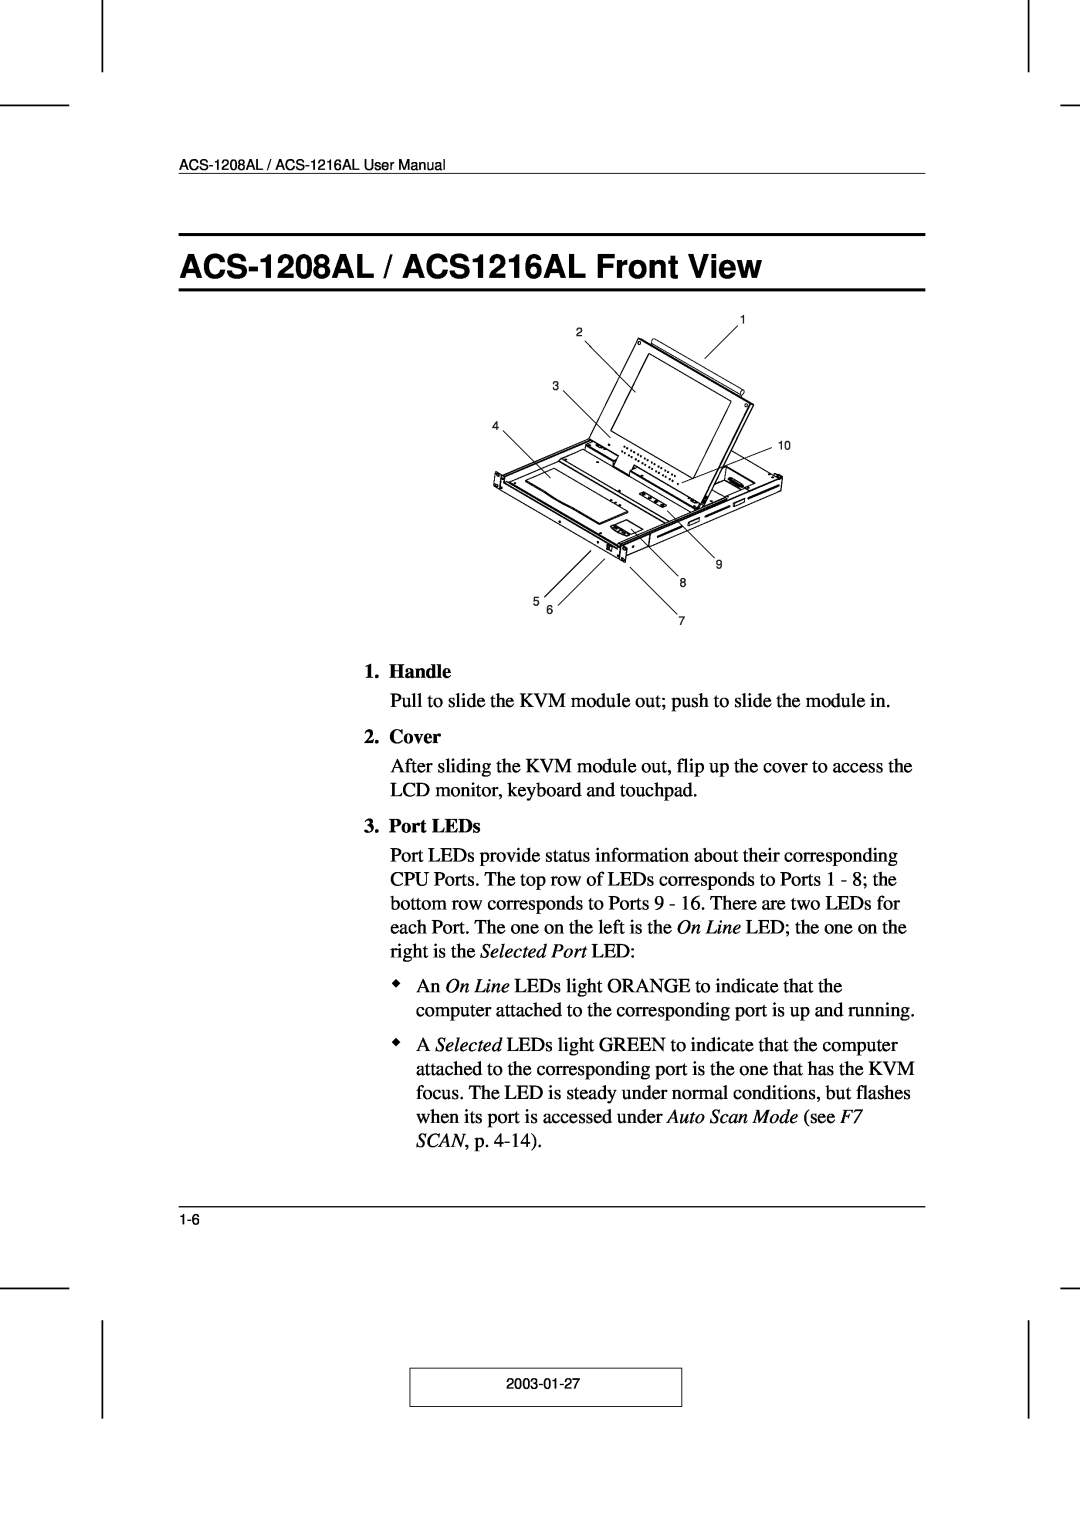 ATEN Technology ACS-1208AL, ACS-1216AL user manual ACS-1208AL /ACS1216AL Front View, Handle, Cover, Port LEDs 